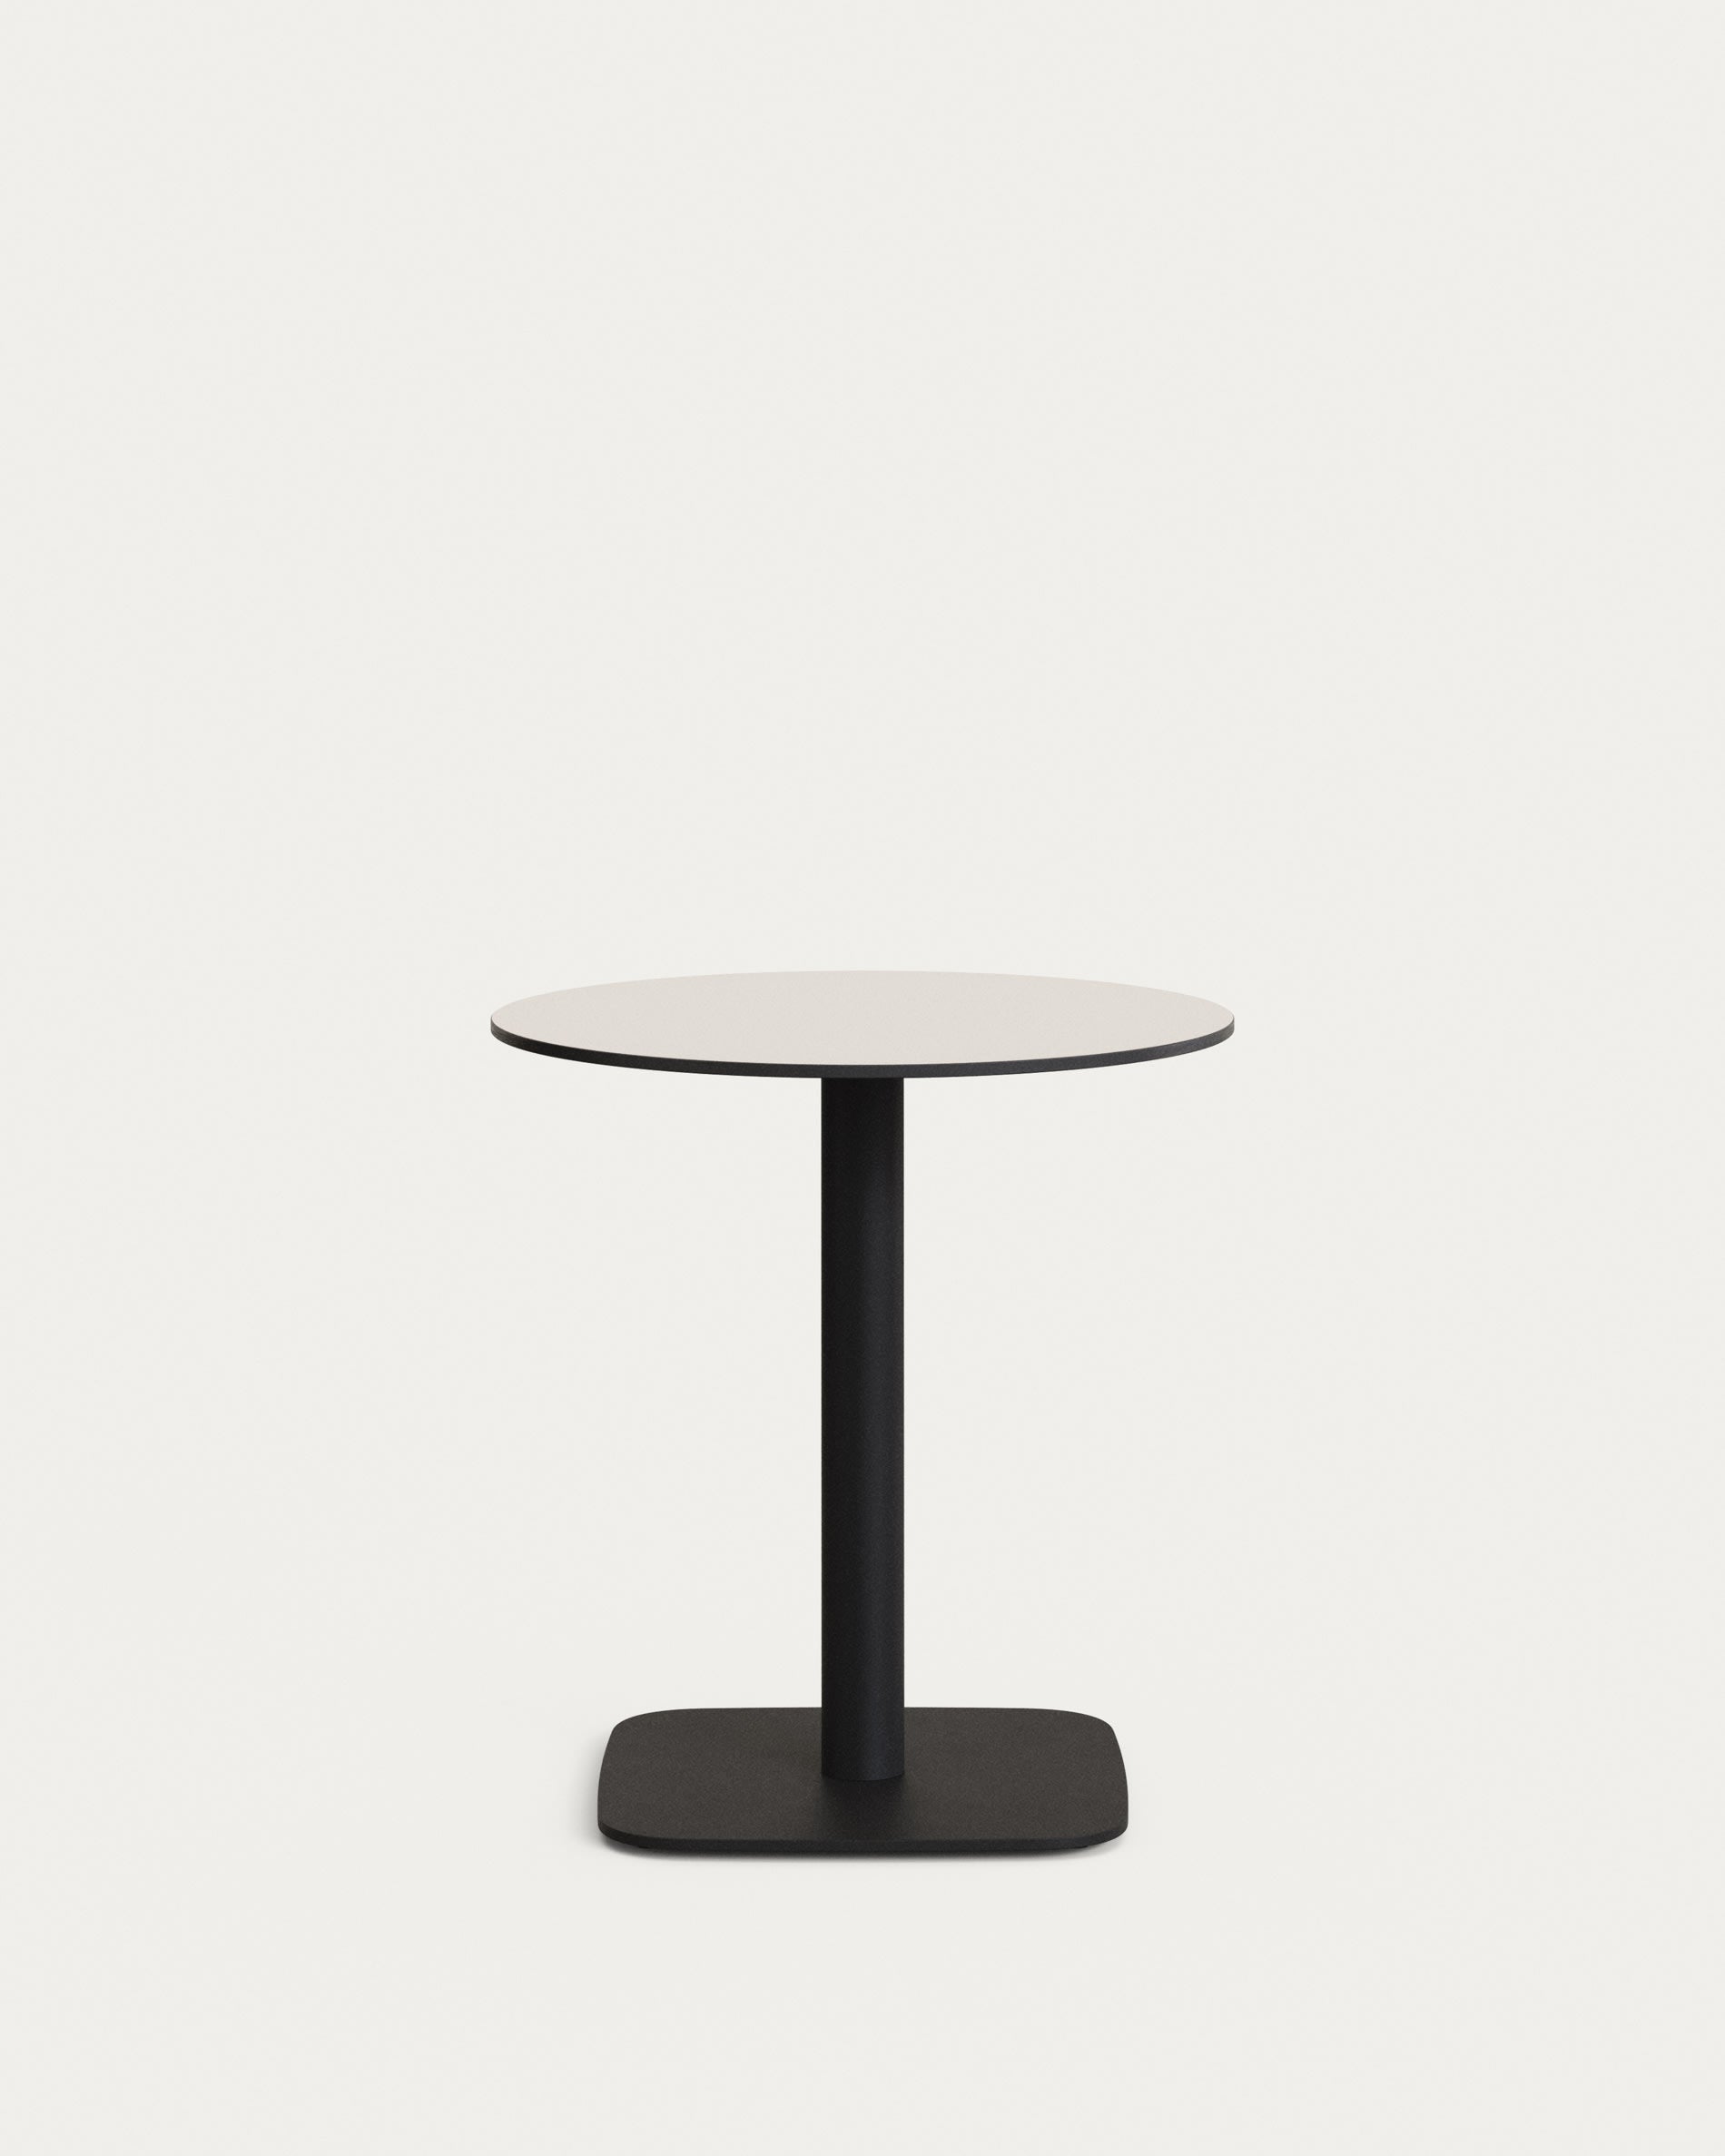 Dina kerek kültéri asztal fehérben, fém lábakkal fekete festett befejezéssel, Ø 68x70 cm